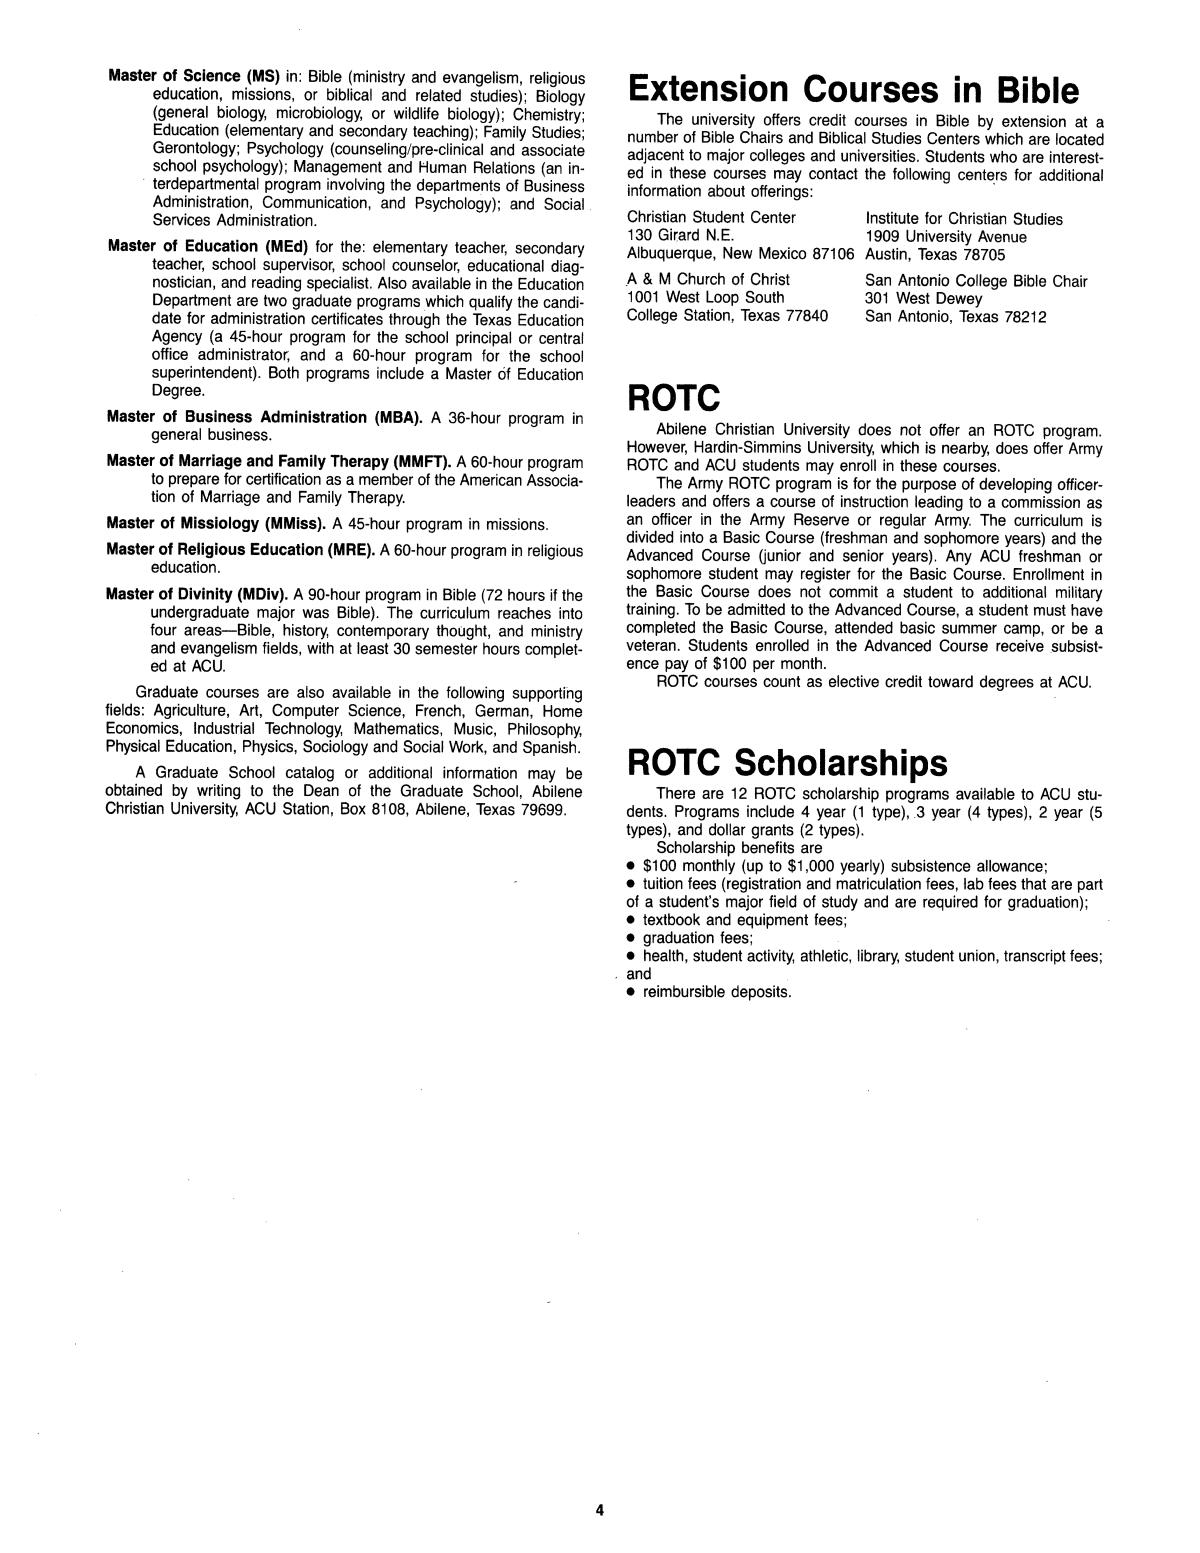 Catalog of Abilene Christian University, 1985-1986
                                                
                                                    4
                                                